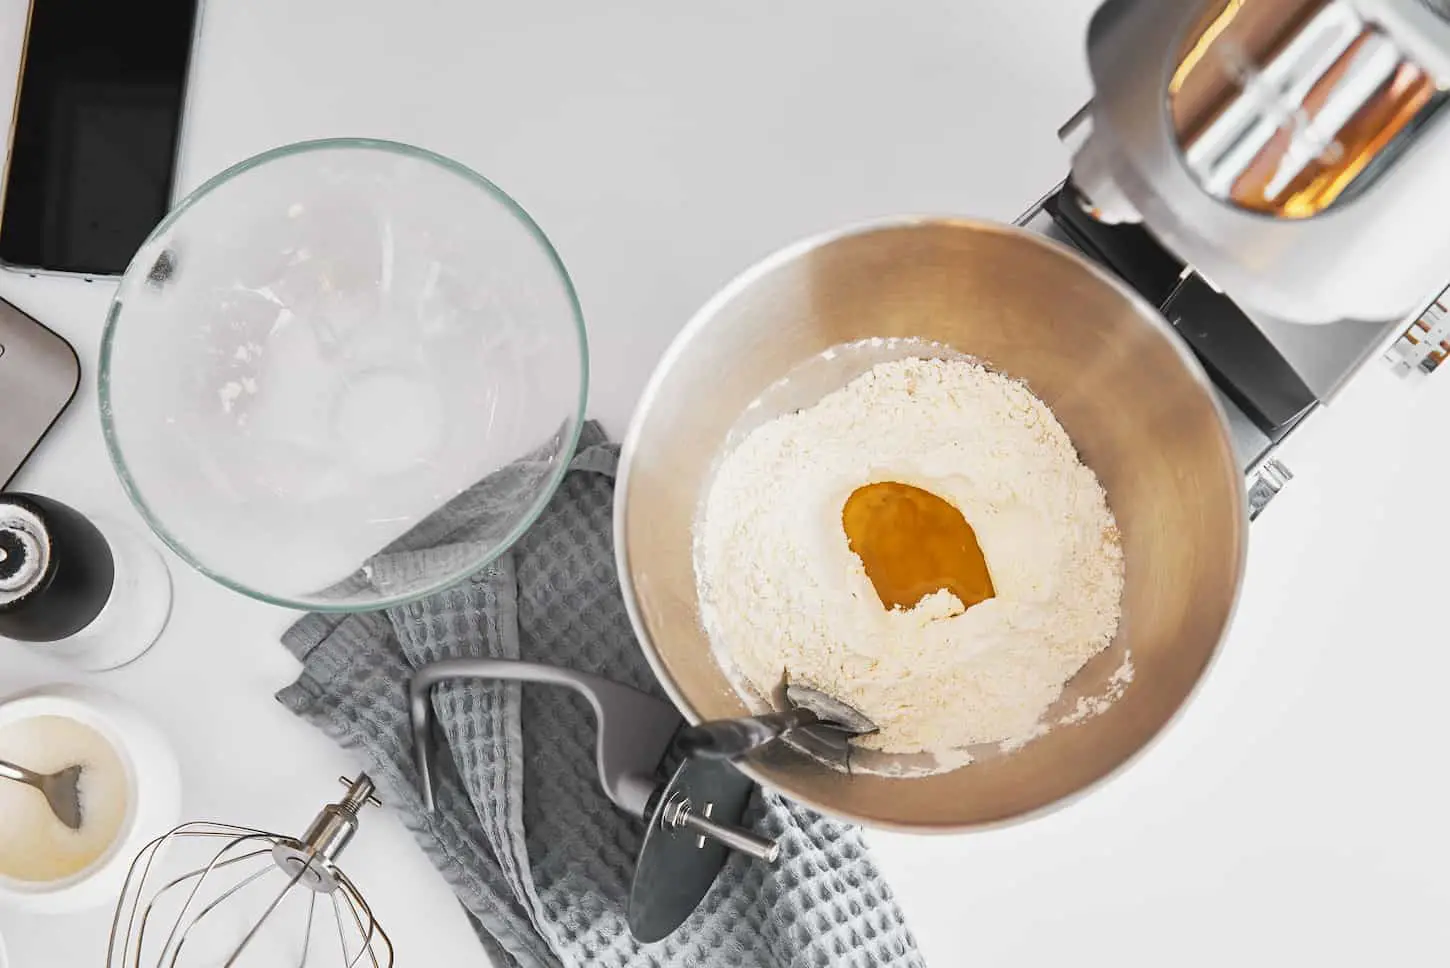 Can You Freeze-Dry Mixes? Pancakes, Waffles, Cakes Etc.